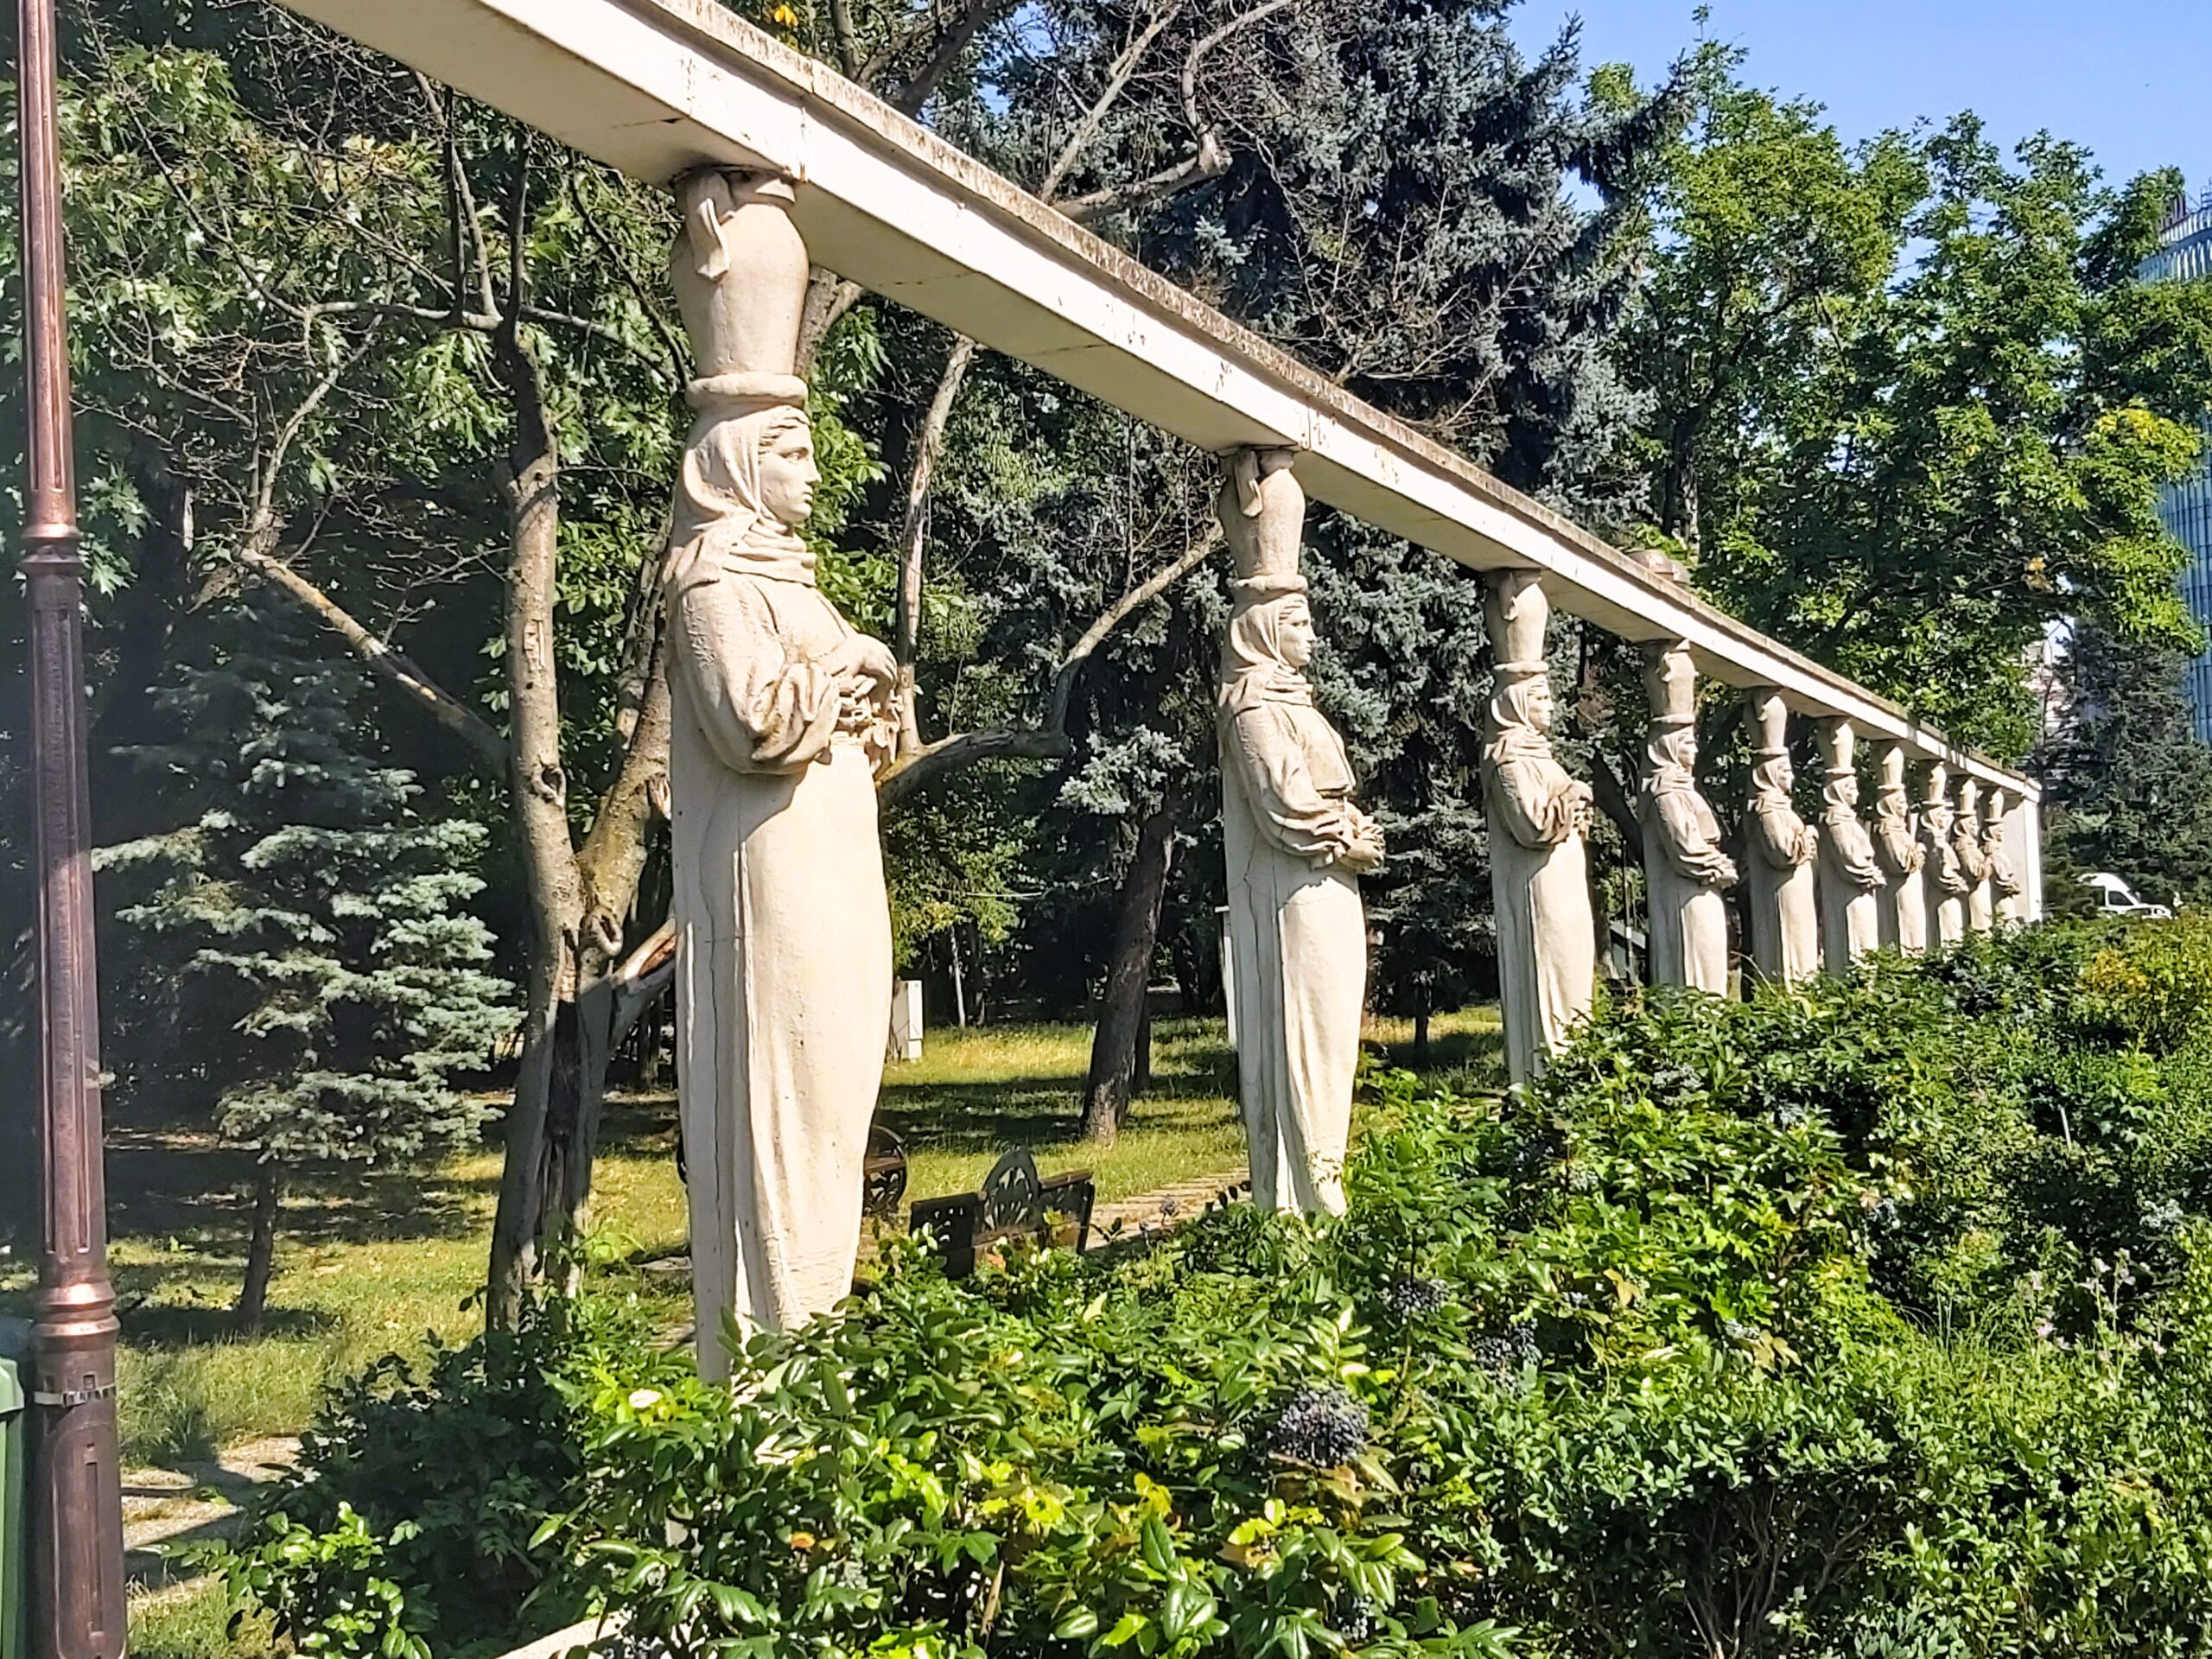 A selection of statues in Herăstrău Park, known as "Aleea Cariatidelor" in București, Romania